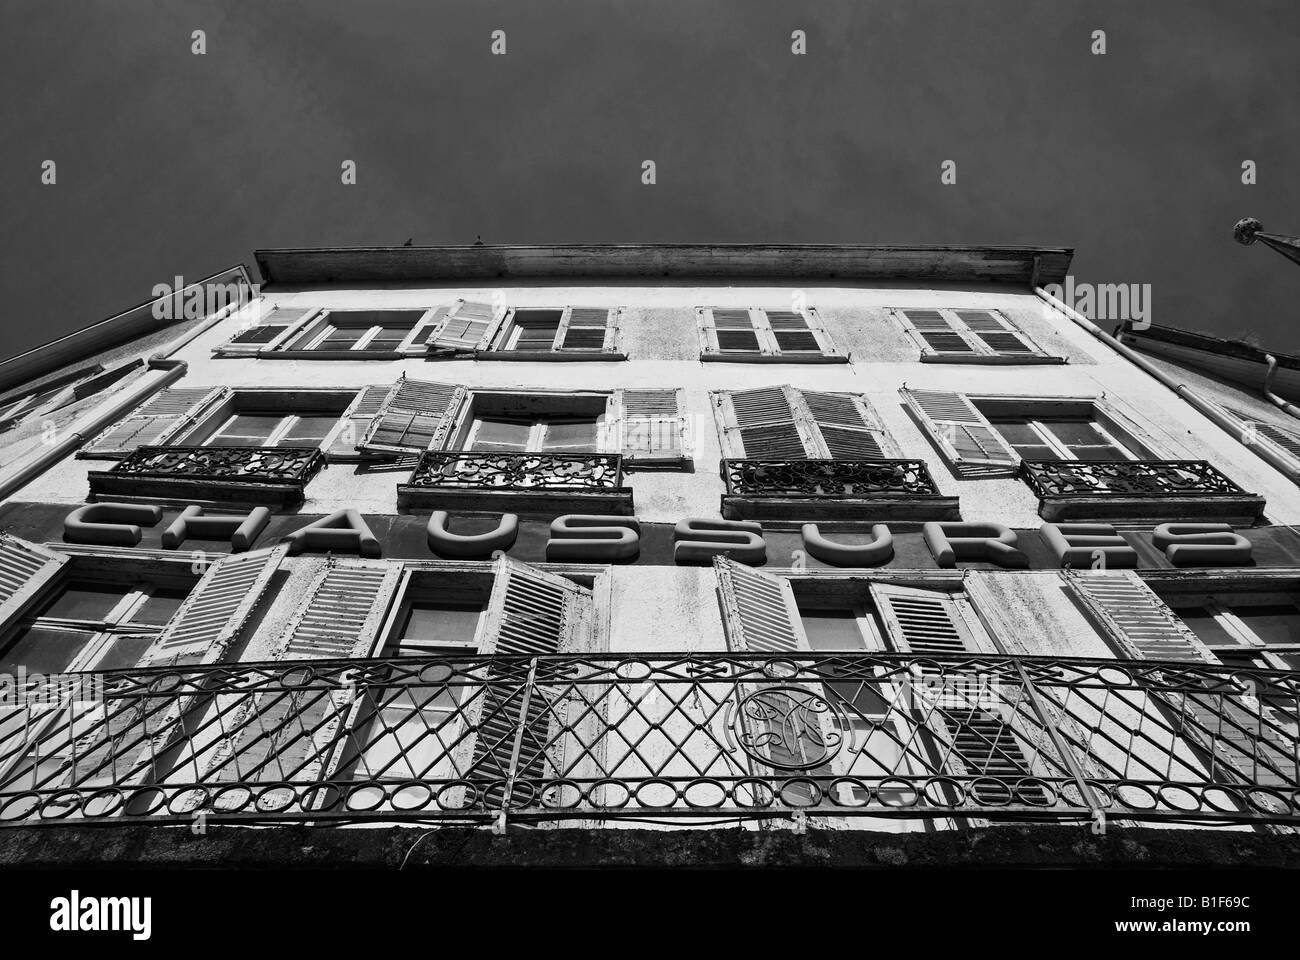 Stock photo d'un vieux magasin de chaussures à fenêtre à volets La photo a été prise dans la ville de Limoges en France Banque D'Images